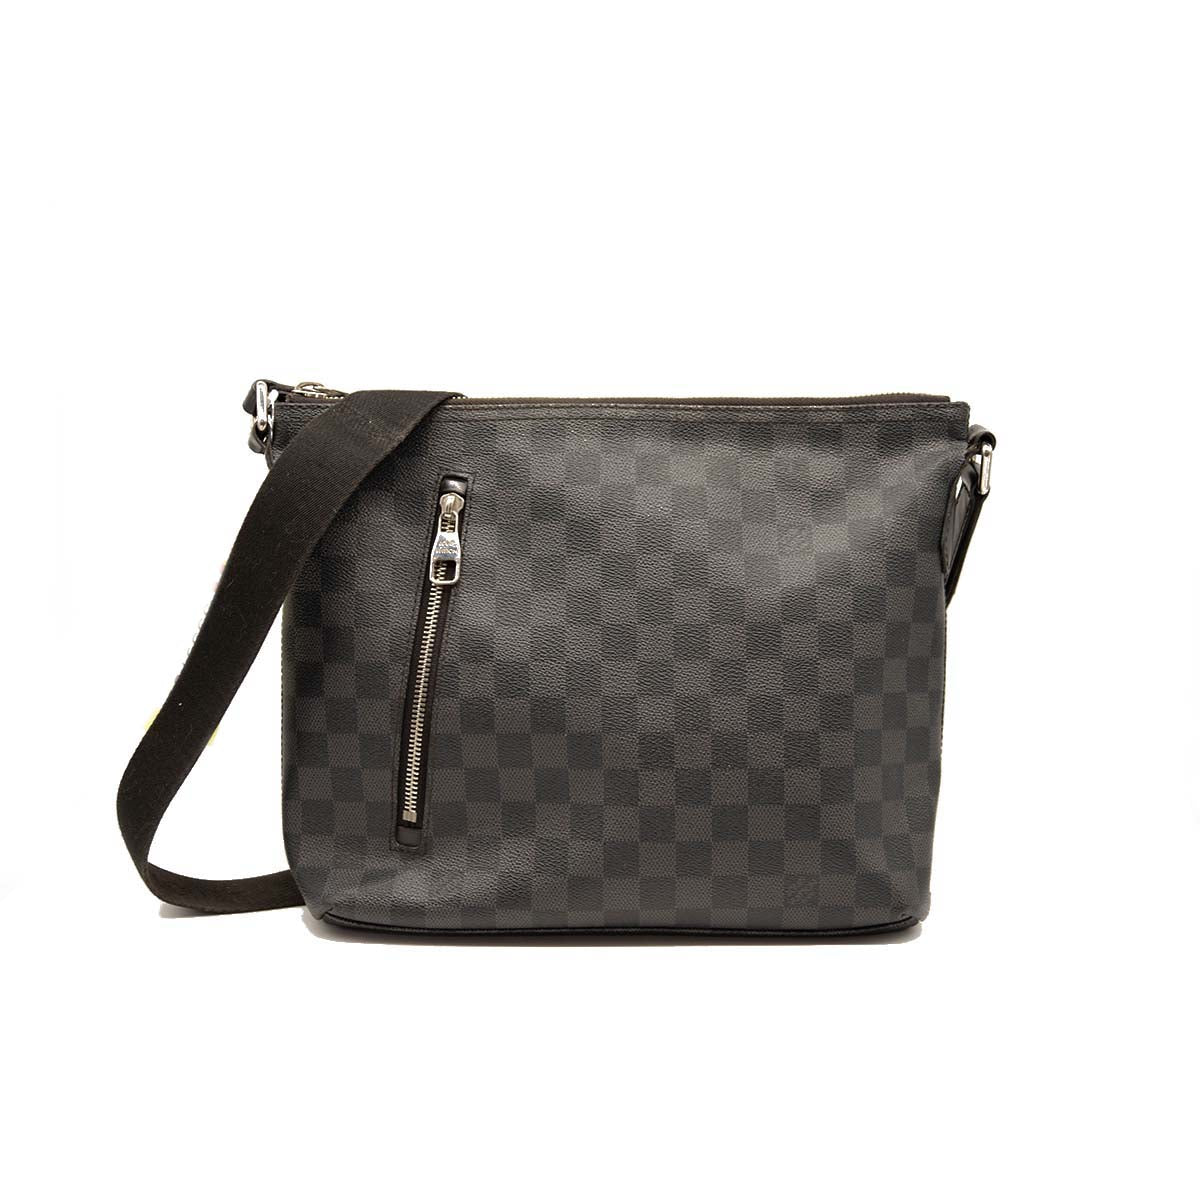 Louis Vuitton, Bags, Authentic Louis Vuitton Damier Graphite Mick Pm  Handbag